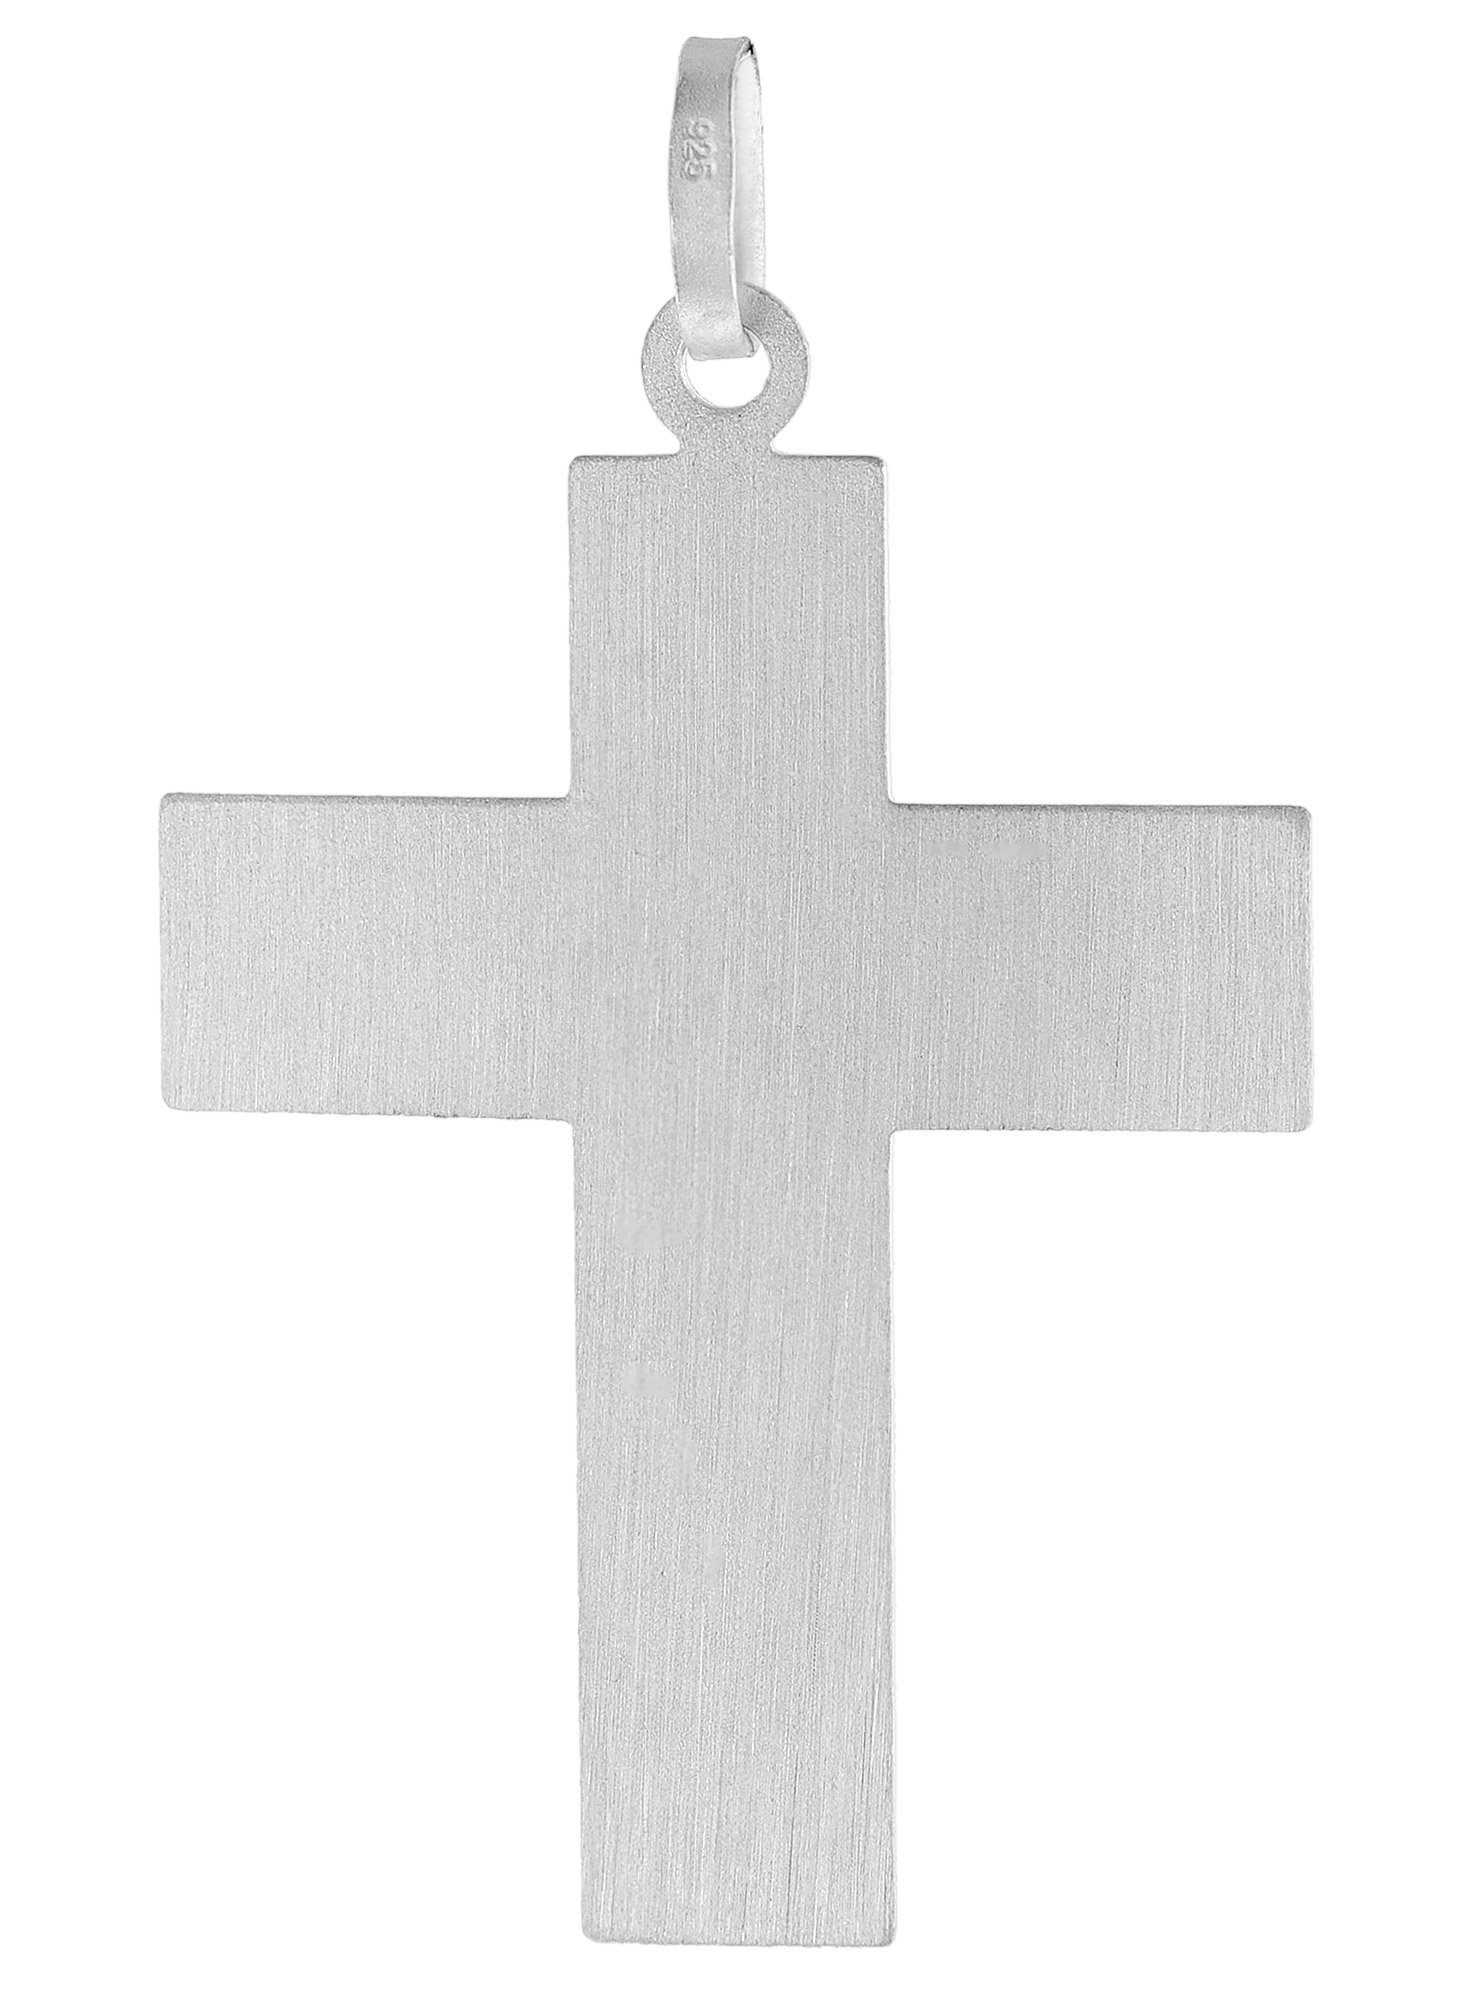 Männer-Kette Kreuz trendor Anhänger 925 mit Silber mit Kette